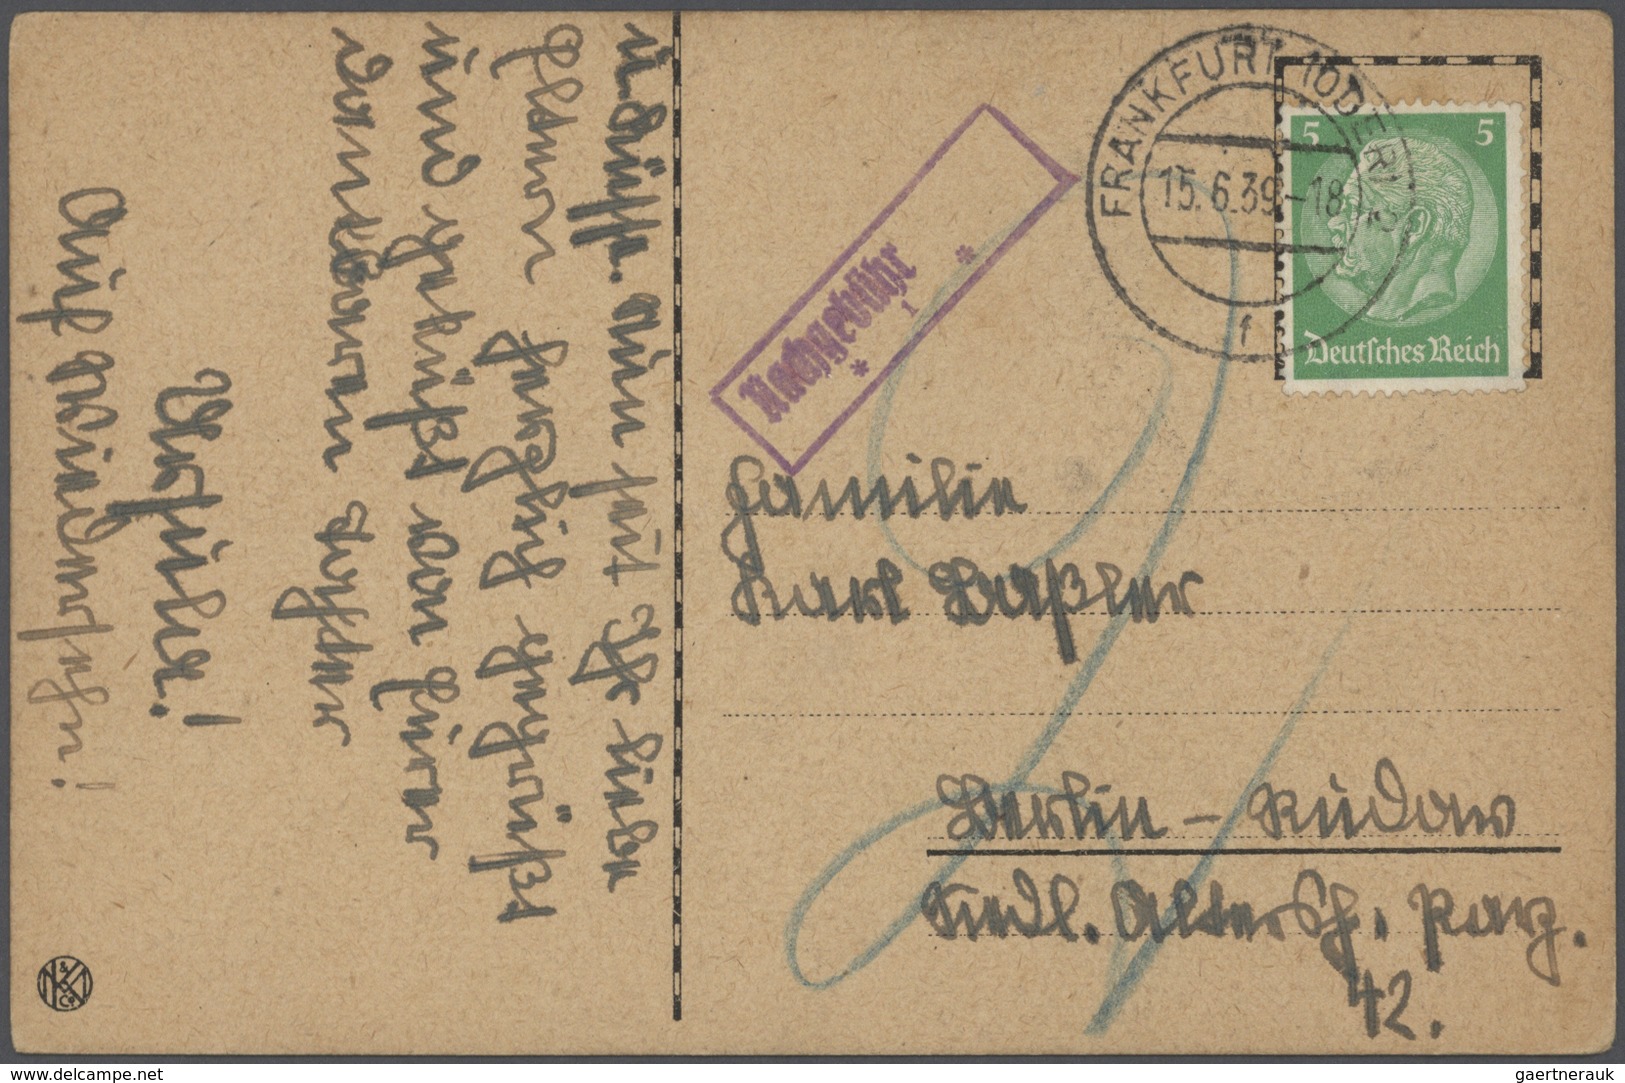 Thematische Philatelie: 1899/1944, NACHGEBÜHR, ca 200 Ansichtskarten überwiegend aus Deutschland mit